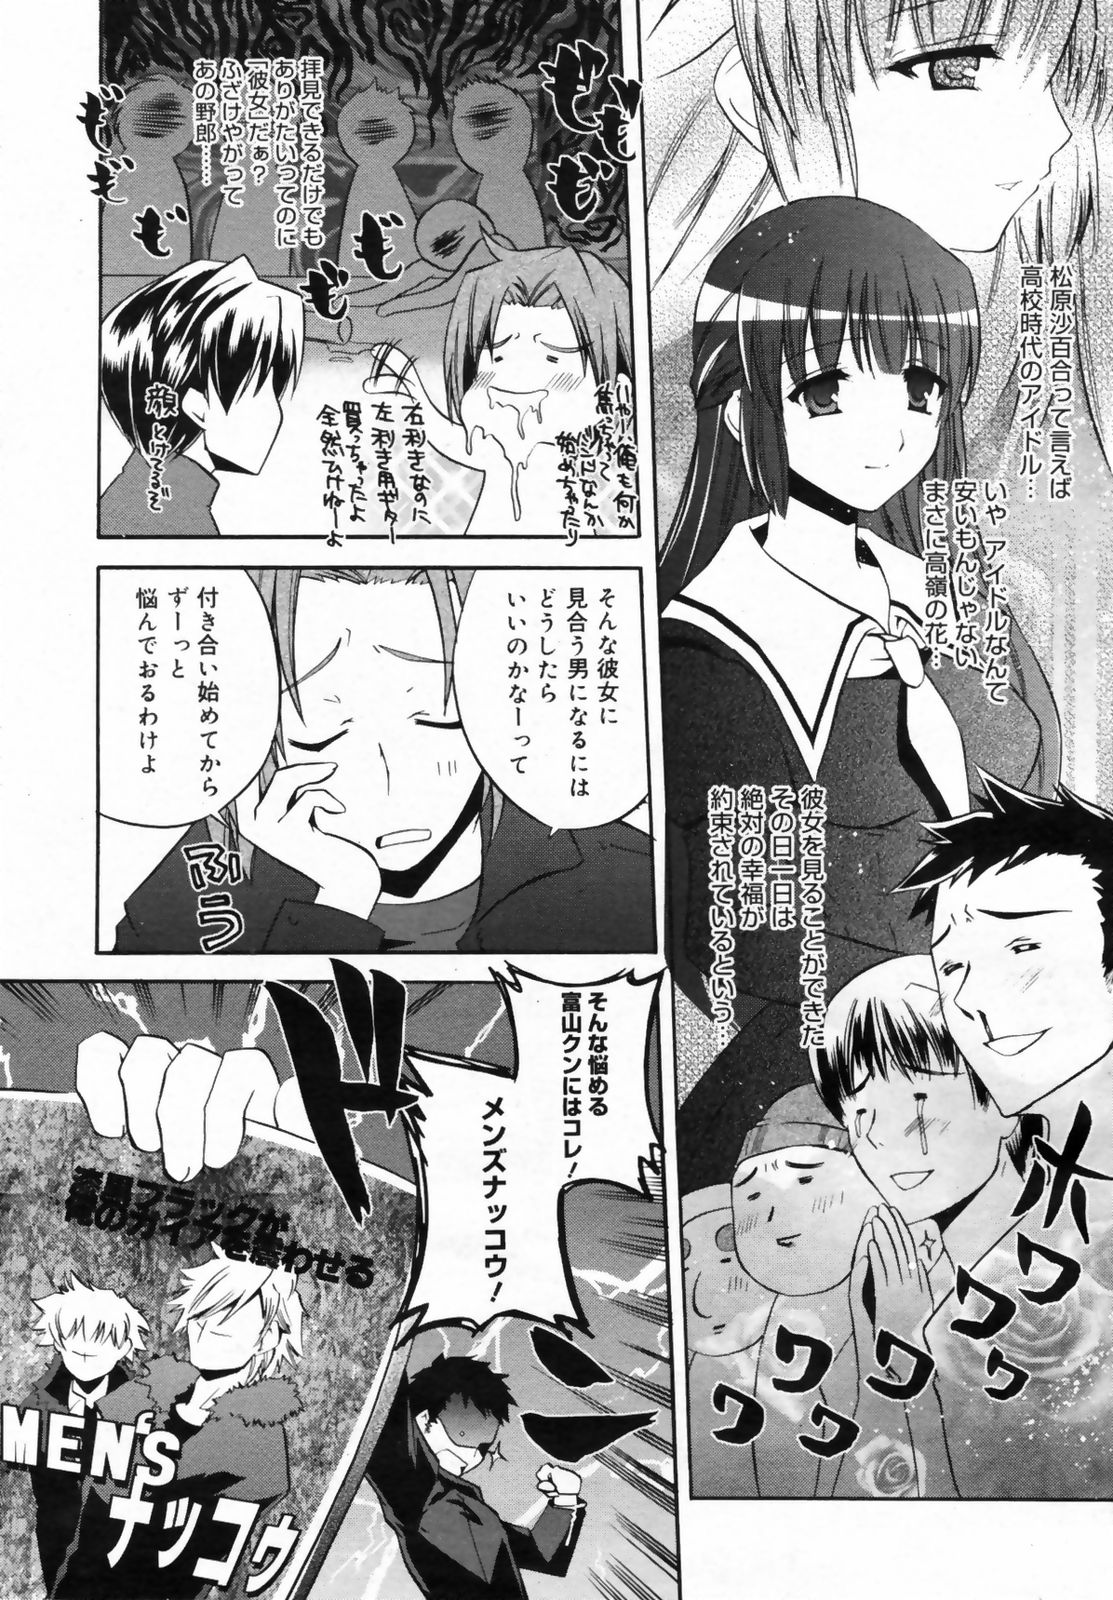 Manga Bangaichi 2009-02 Vol. 234 page 40 full